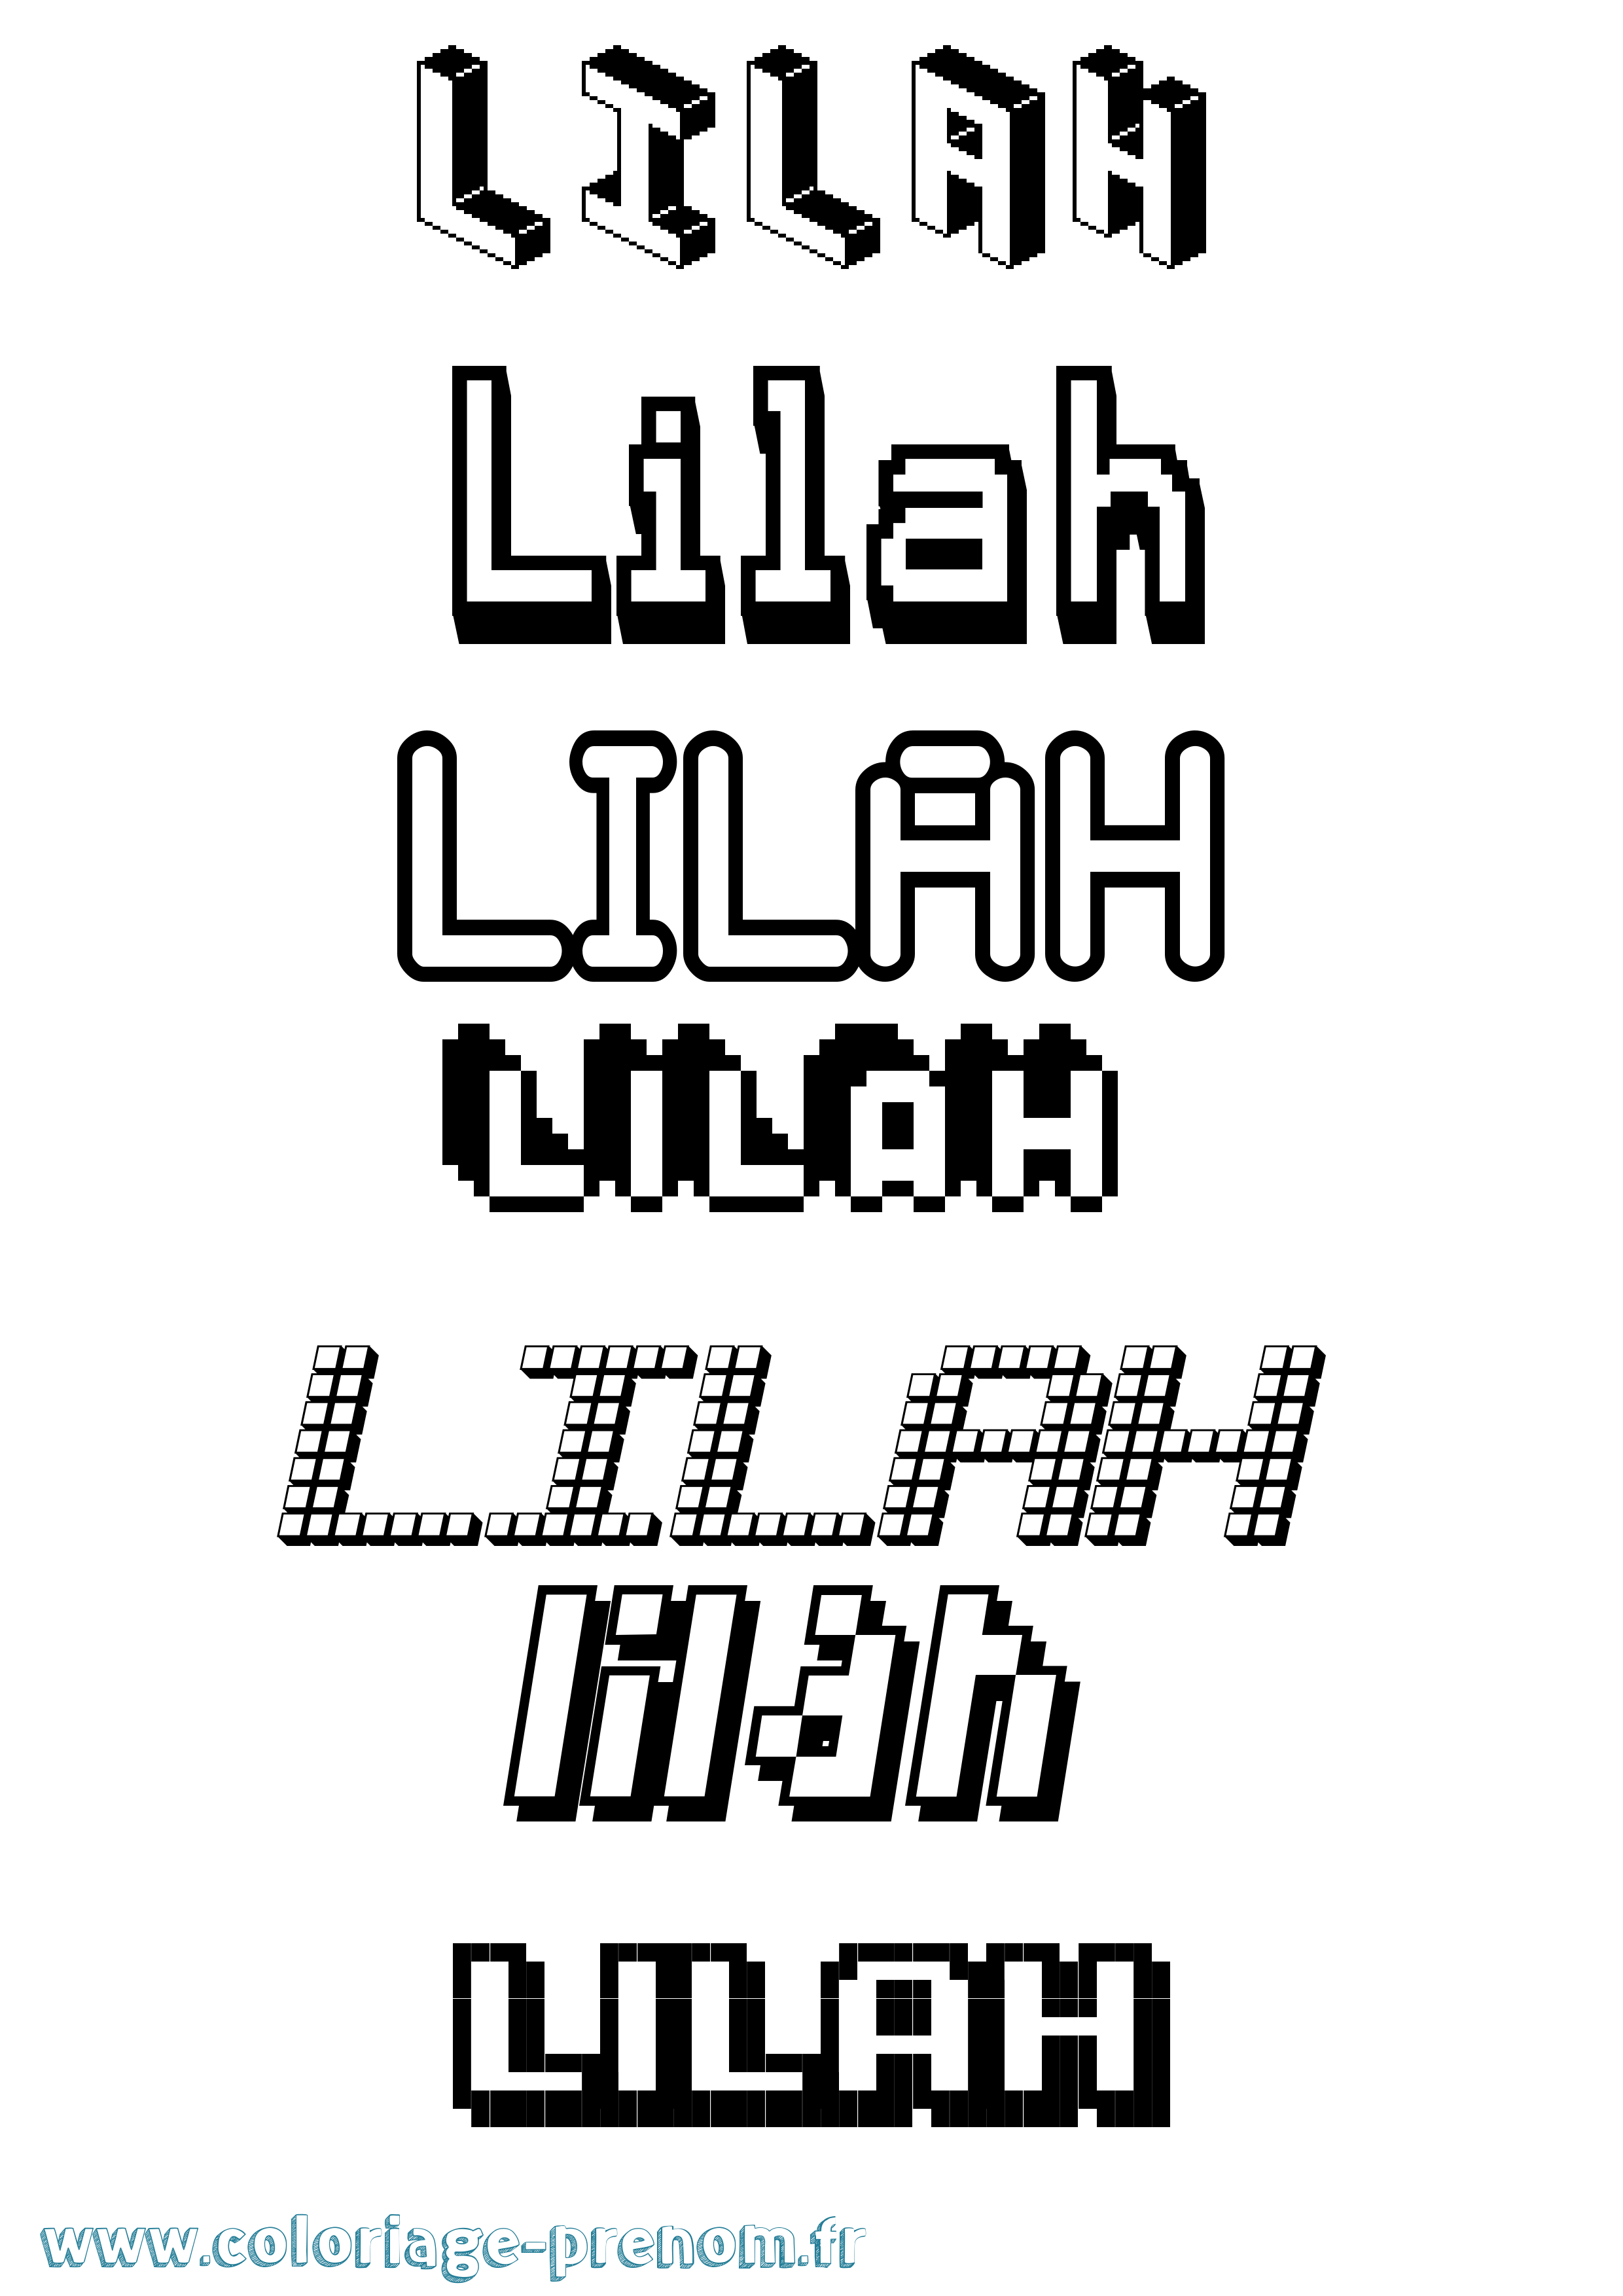 Coloriage prénom Lilah Pixel